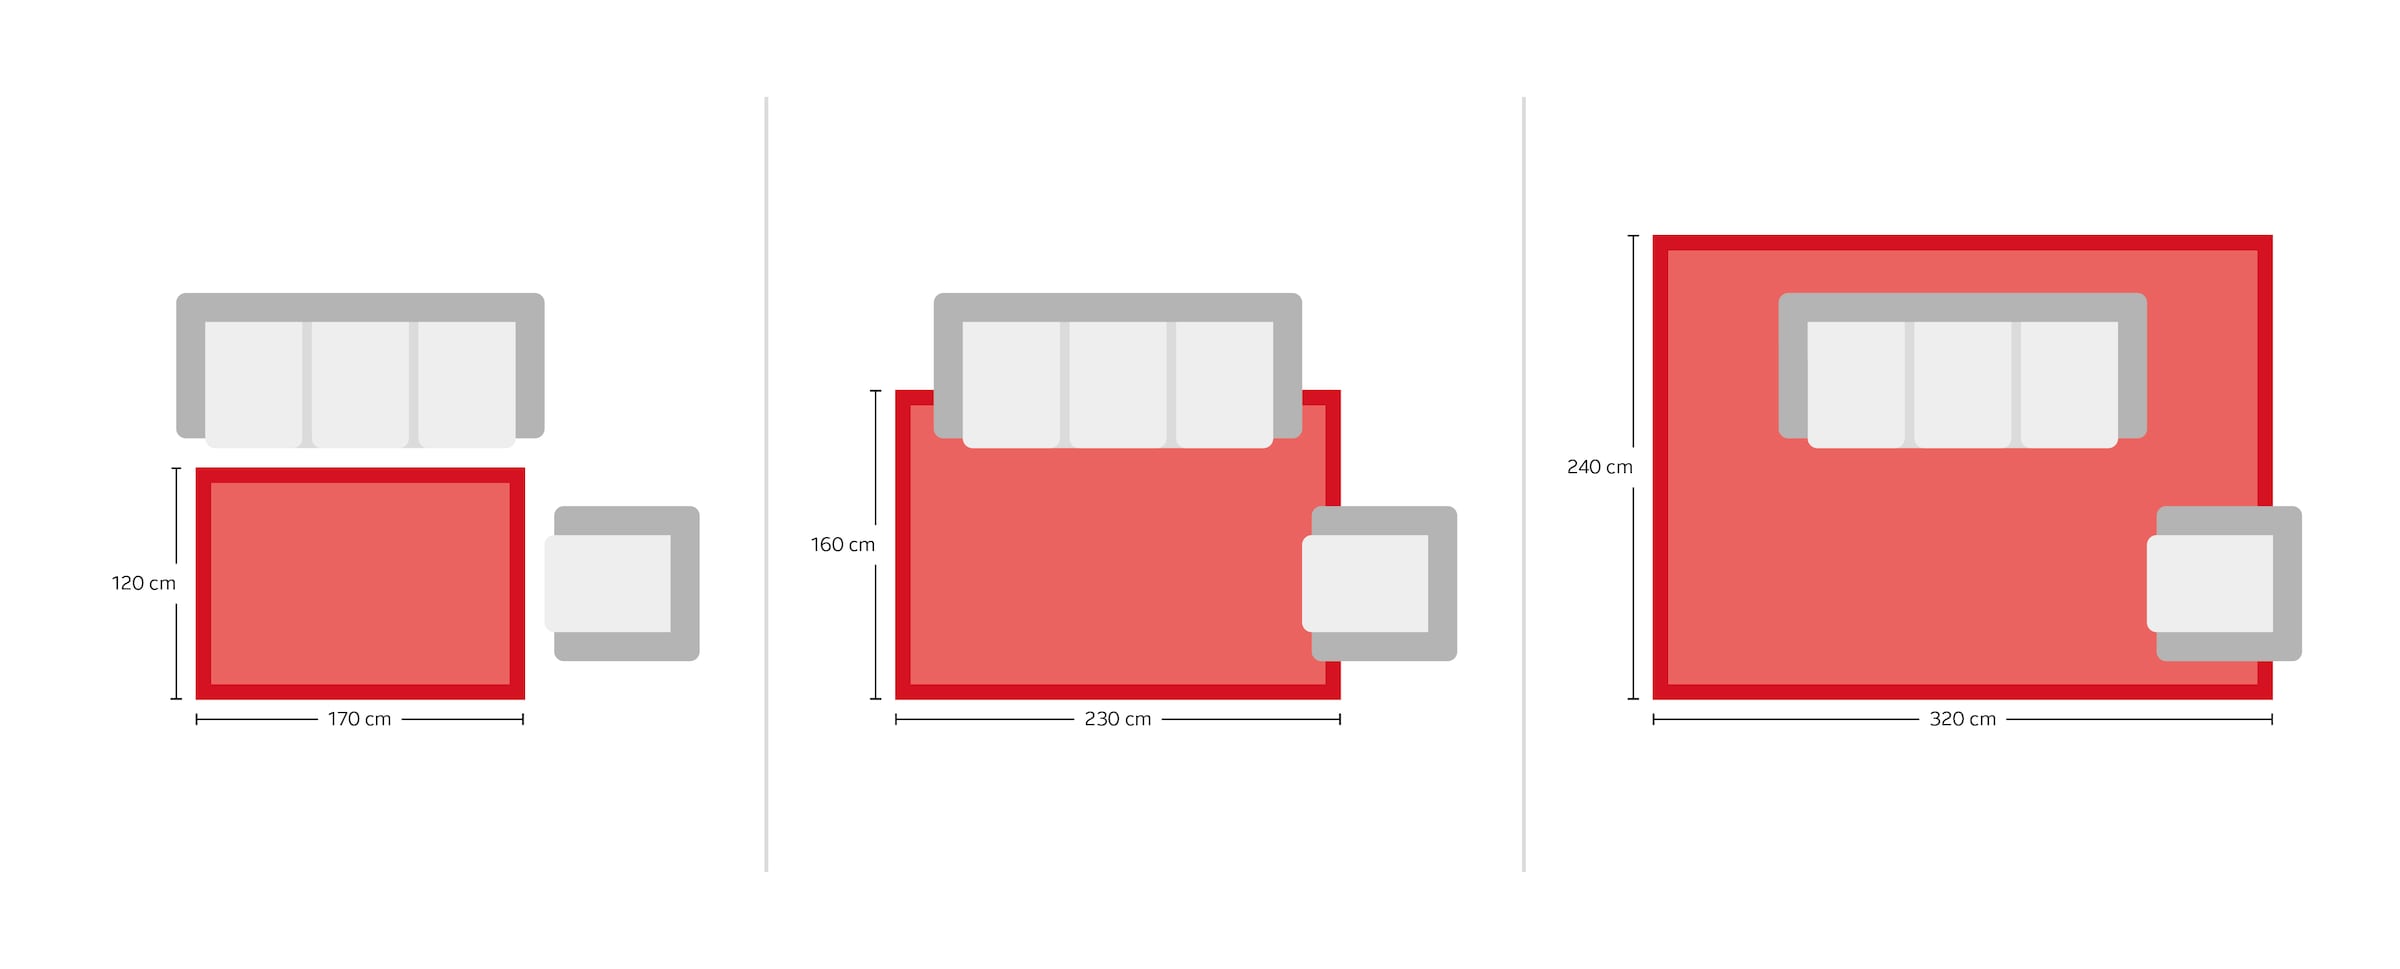 merinos Hochflor-Teppich »Glossy 411«, rechteckig, besonders weich, Microfaser, Langfor Teppich, Wohnzimmer, Schlafzimmer